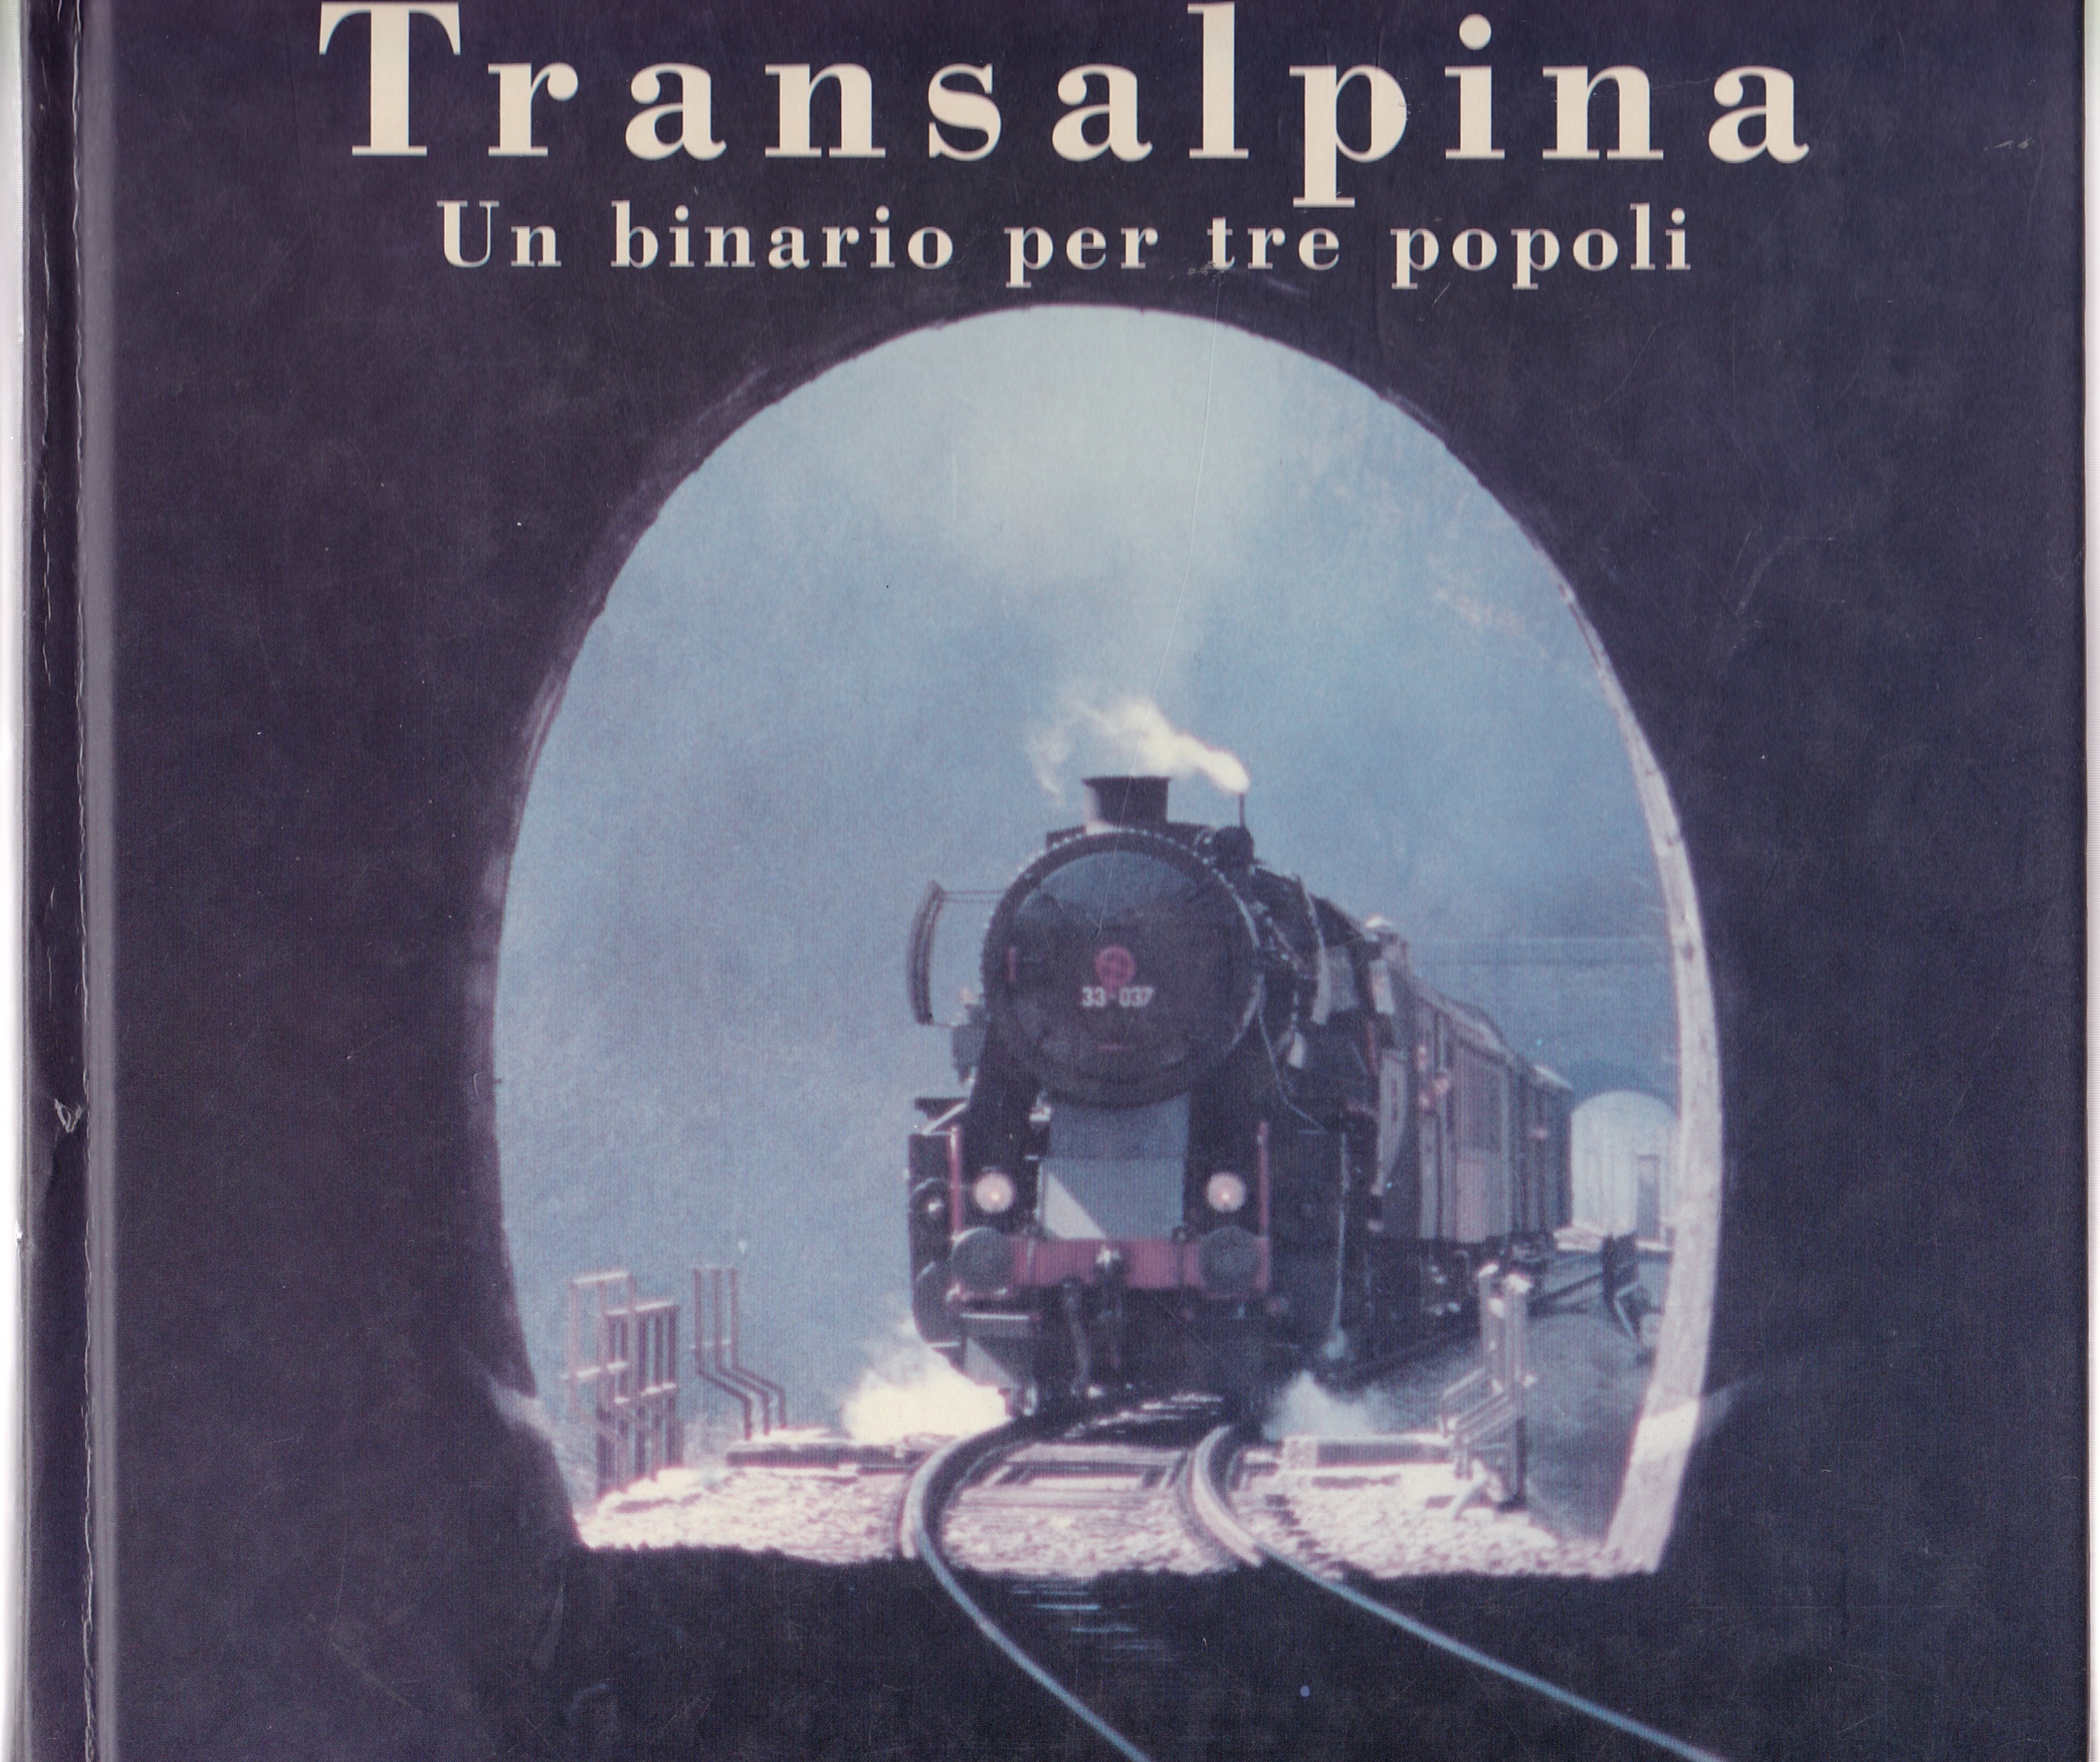 "Transalpina Un binario per tre popoli"